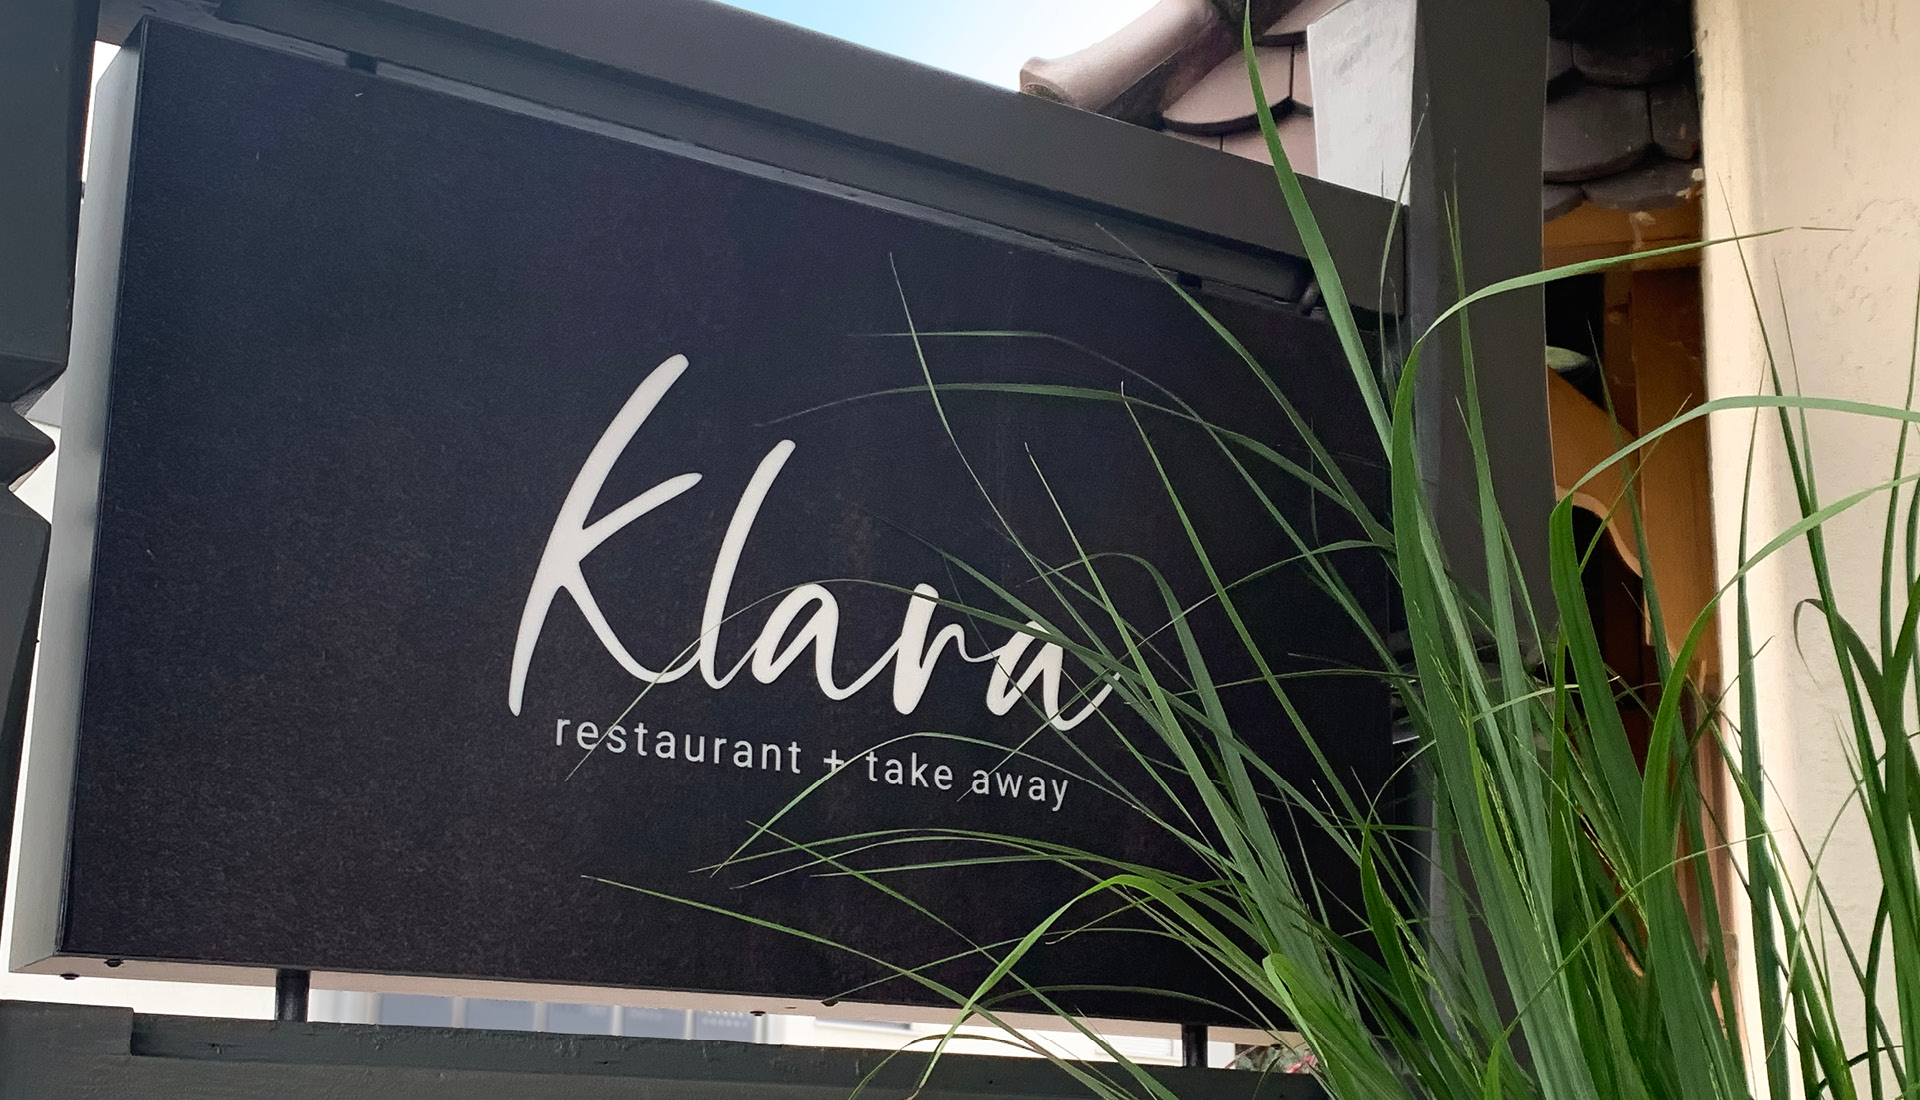 Eingangsschild zum Restaurant Klara im Hanauerhof